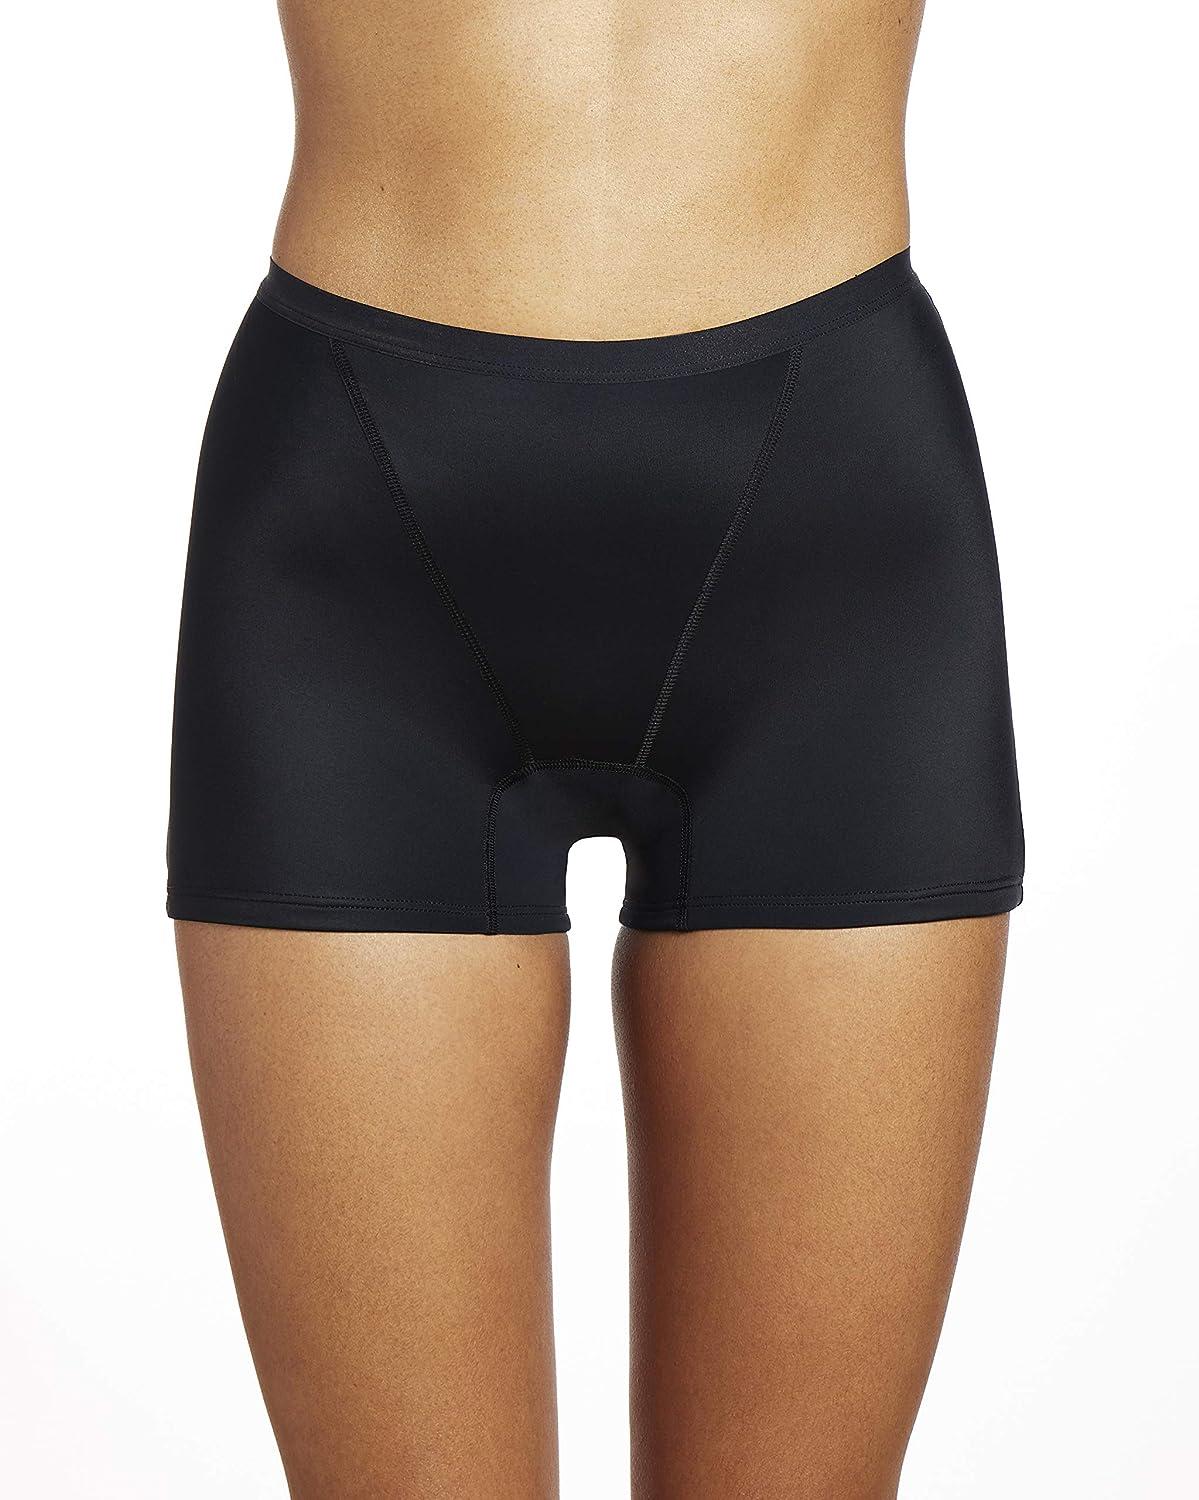 THINX Modal Cotton Boyshort Period Underwear for Women, Period